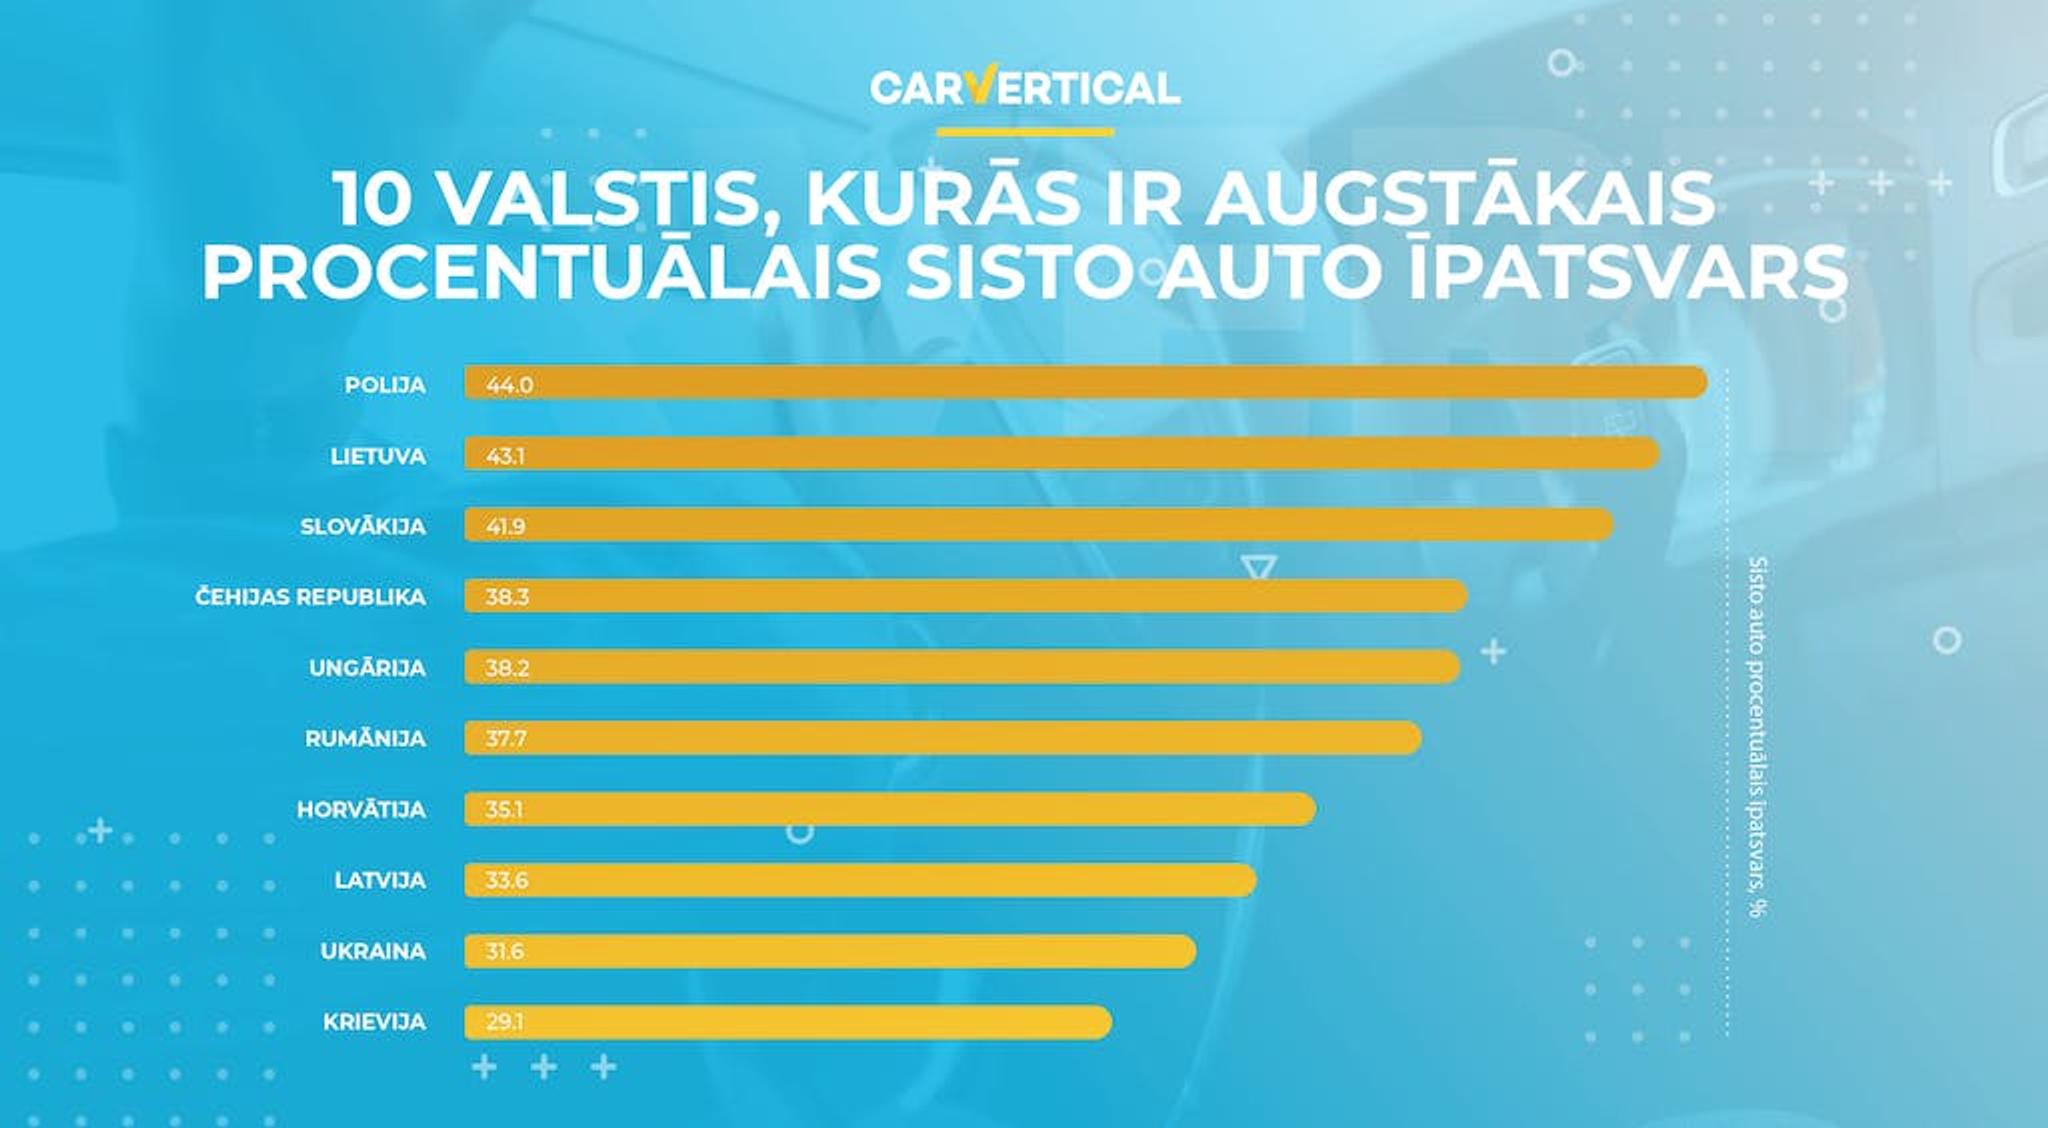 10 valstis, kuras ir augstakais procentualais sisto auto ipatsvars